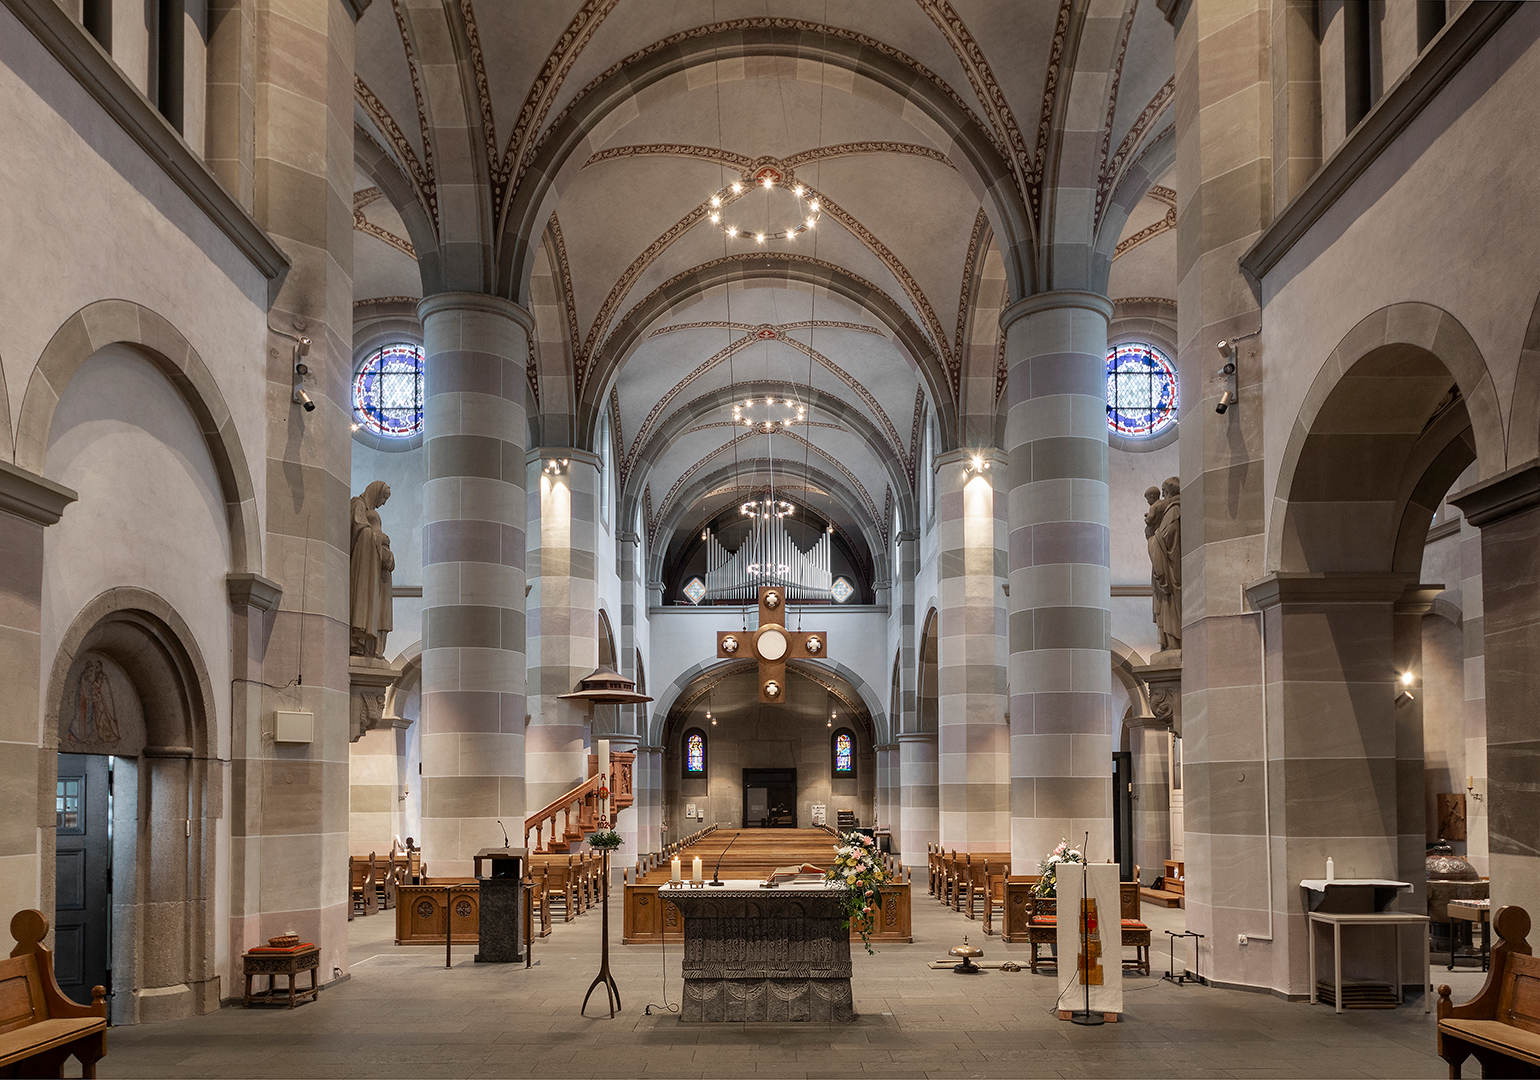 St. Anna in Mönchengladbach